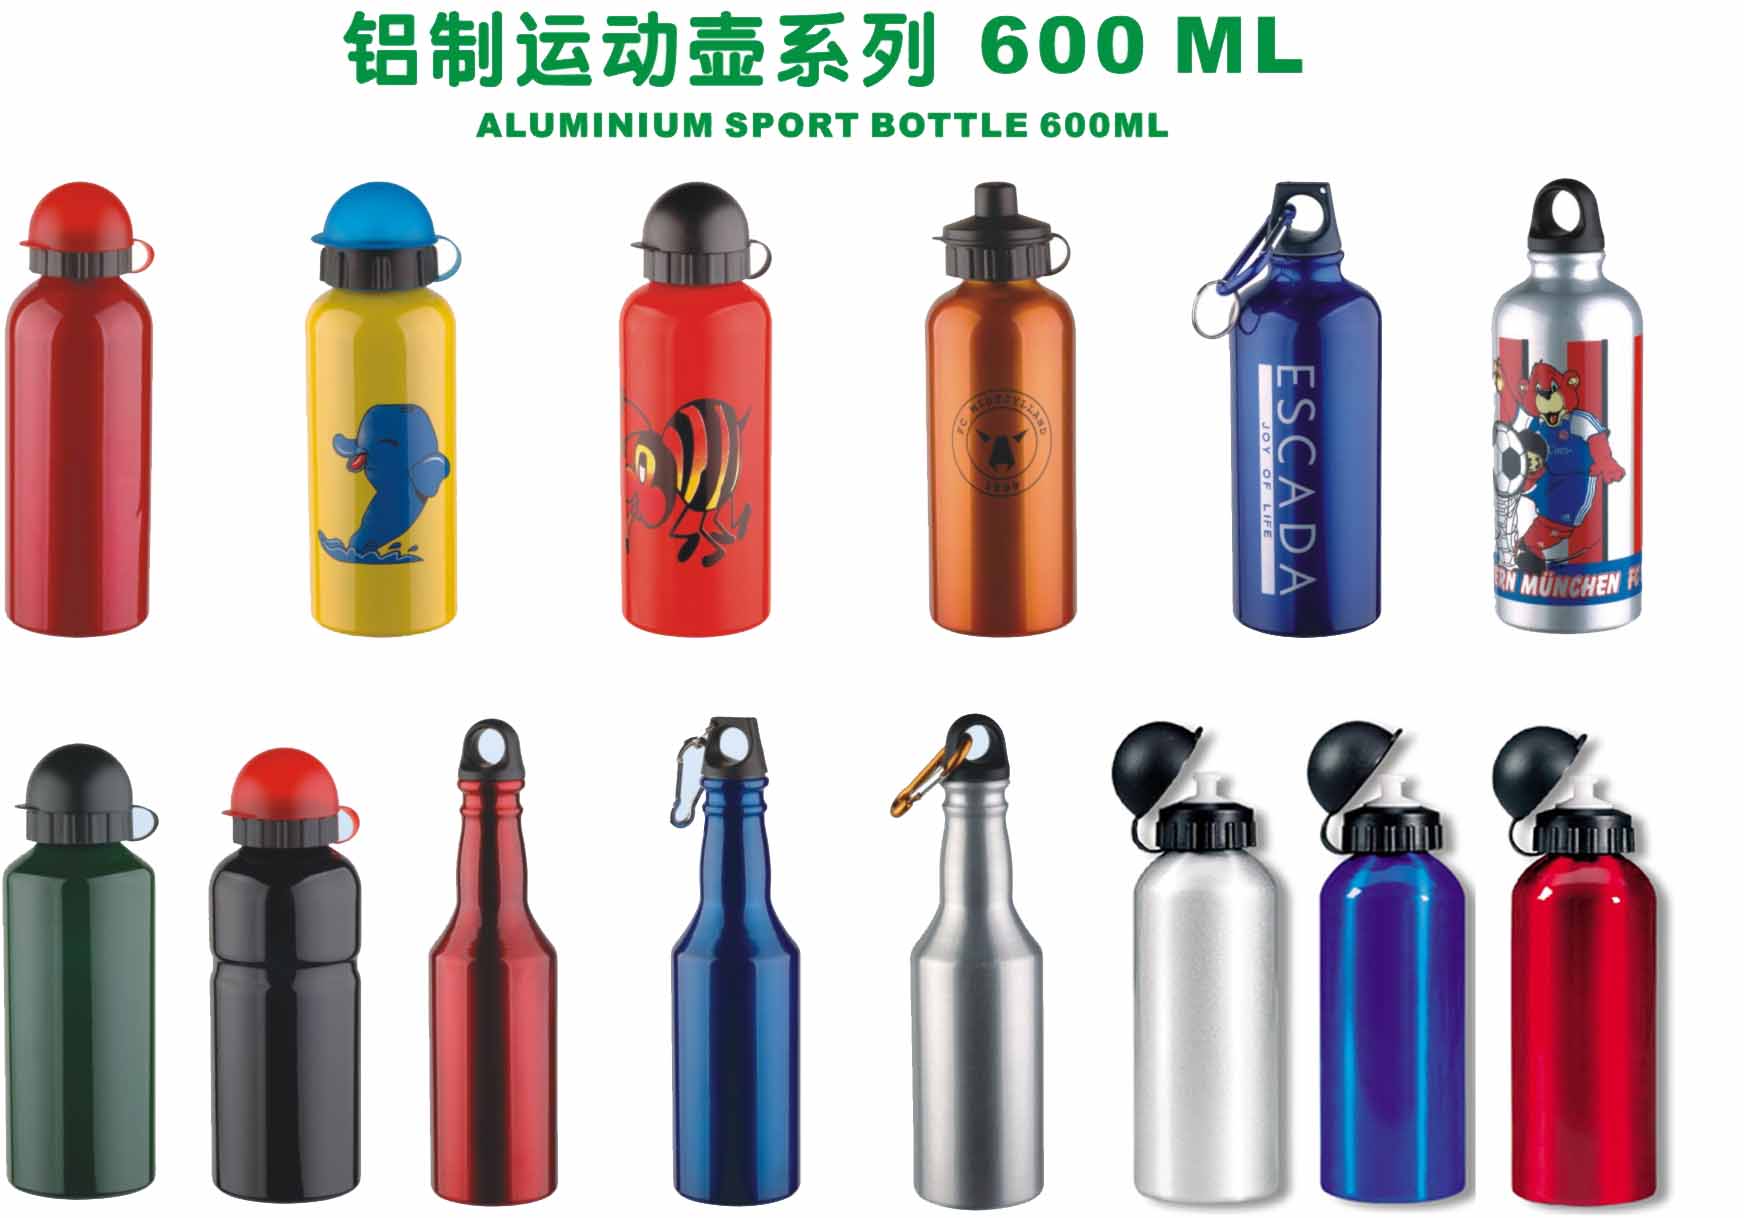  Aluminum Sports Bottle 600ML (Алюминиевые бутылки Спорт 600ml)